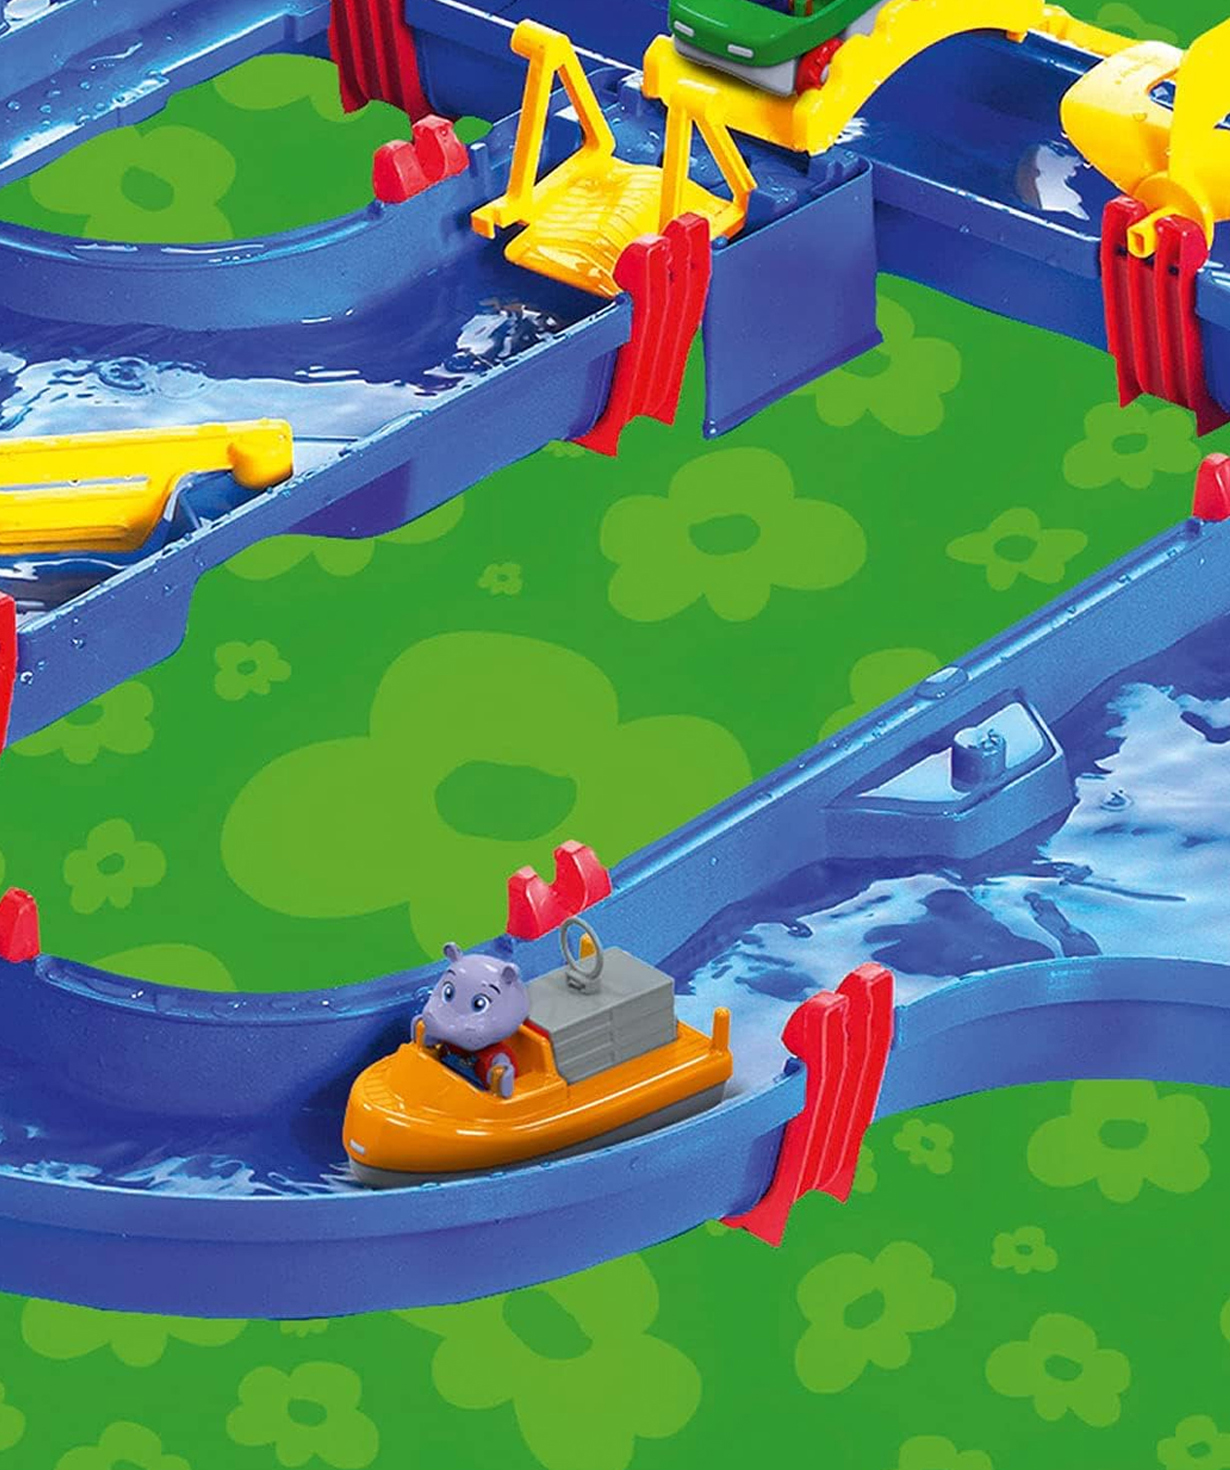 Ջրային խաղ «AquaPlay» Նավահանգիստ